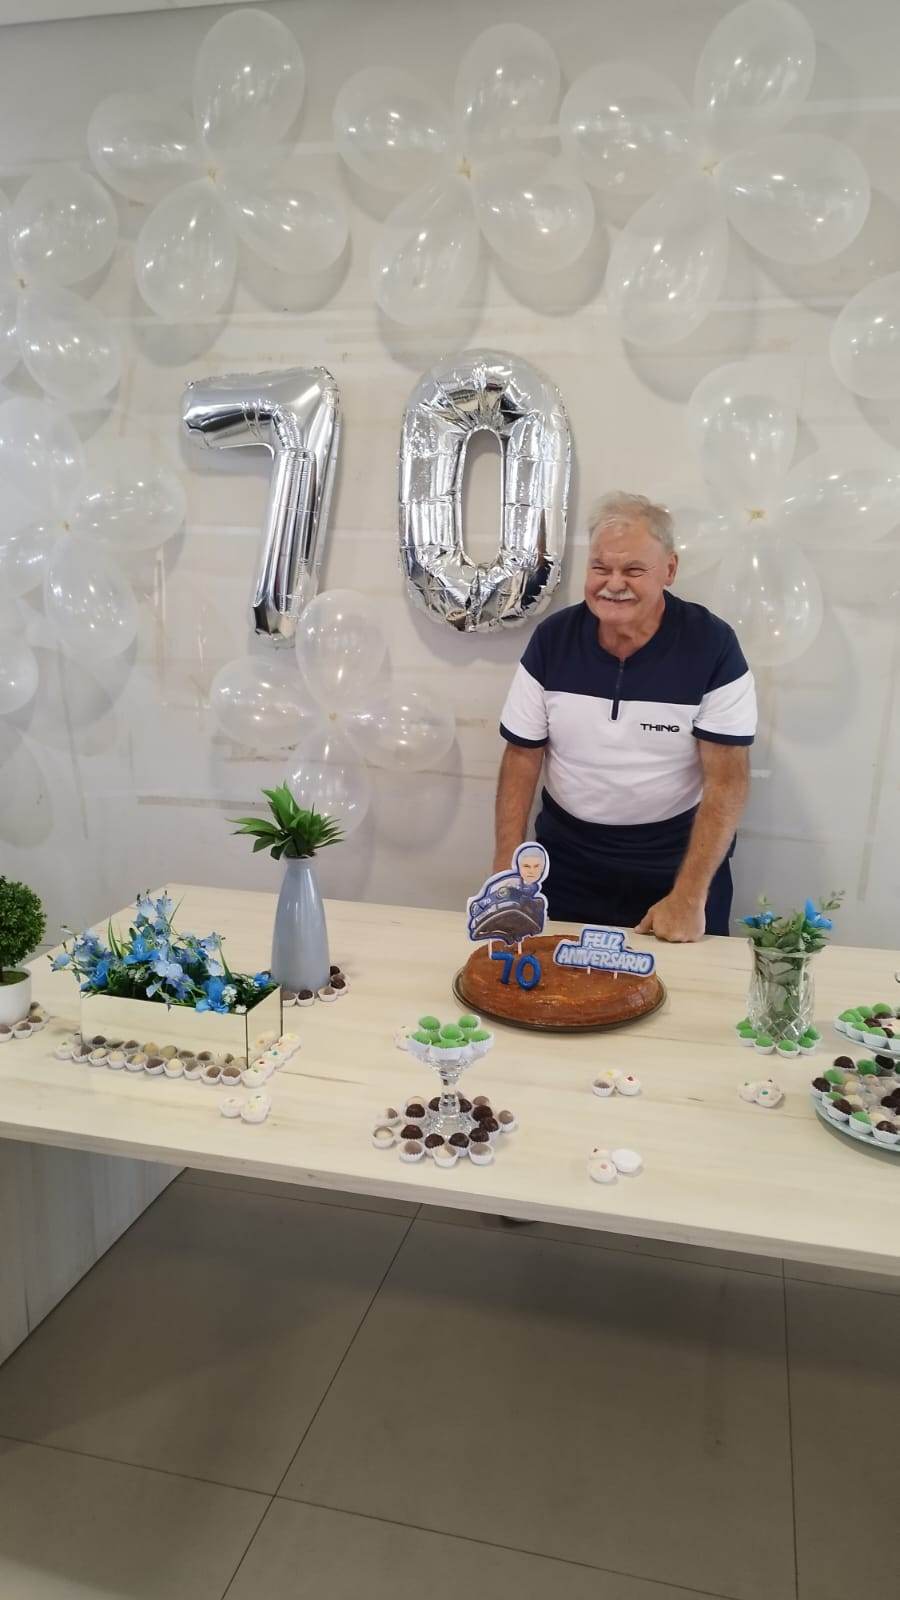 O empresário Ivo Schoemberger na última semana completou seus 70 anos de vida. A expressiva data foi comemorada ao lado de seus familiares. Da coluna RC os votos de felicidades e realizações